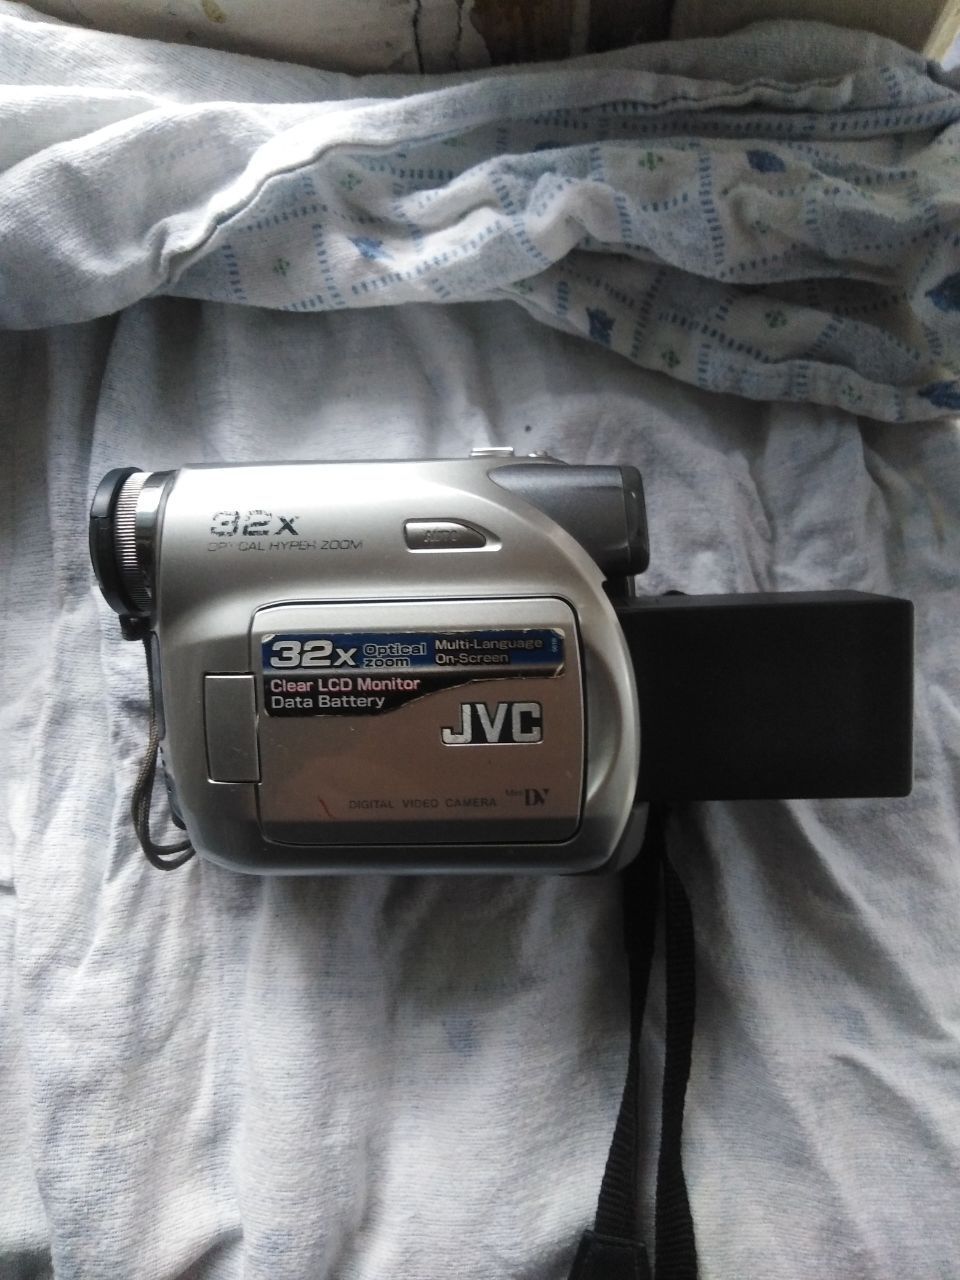 JVC Цифровая видеокамера GR-D370u 32x.Вживана